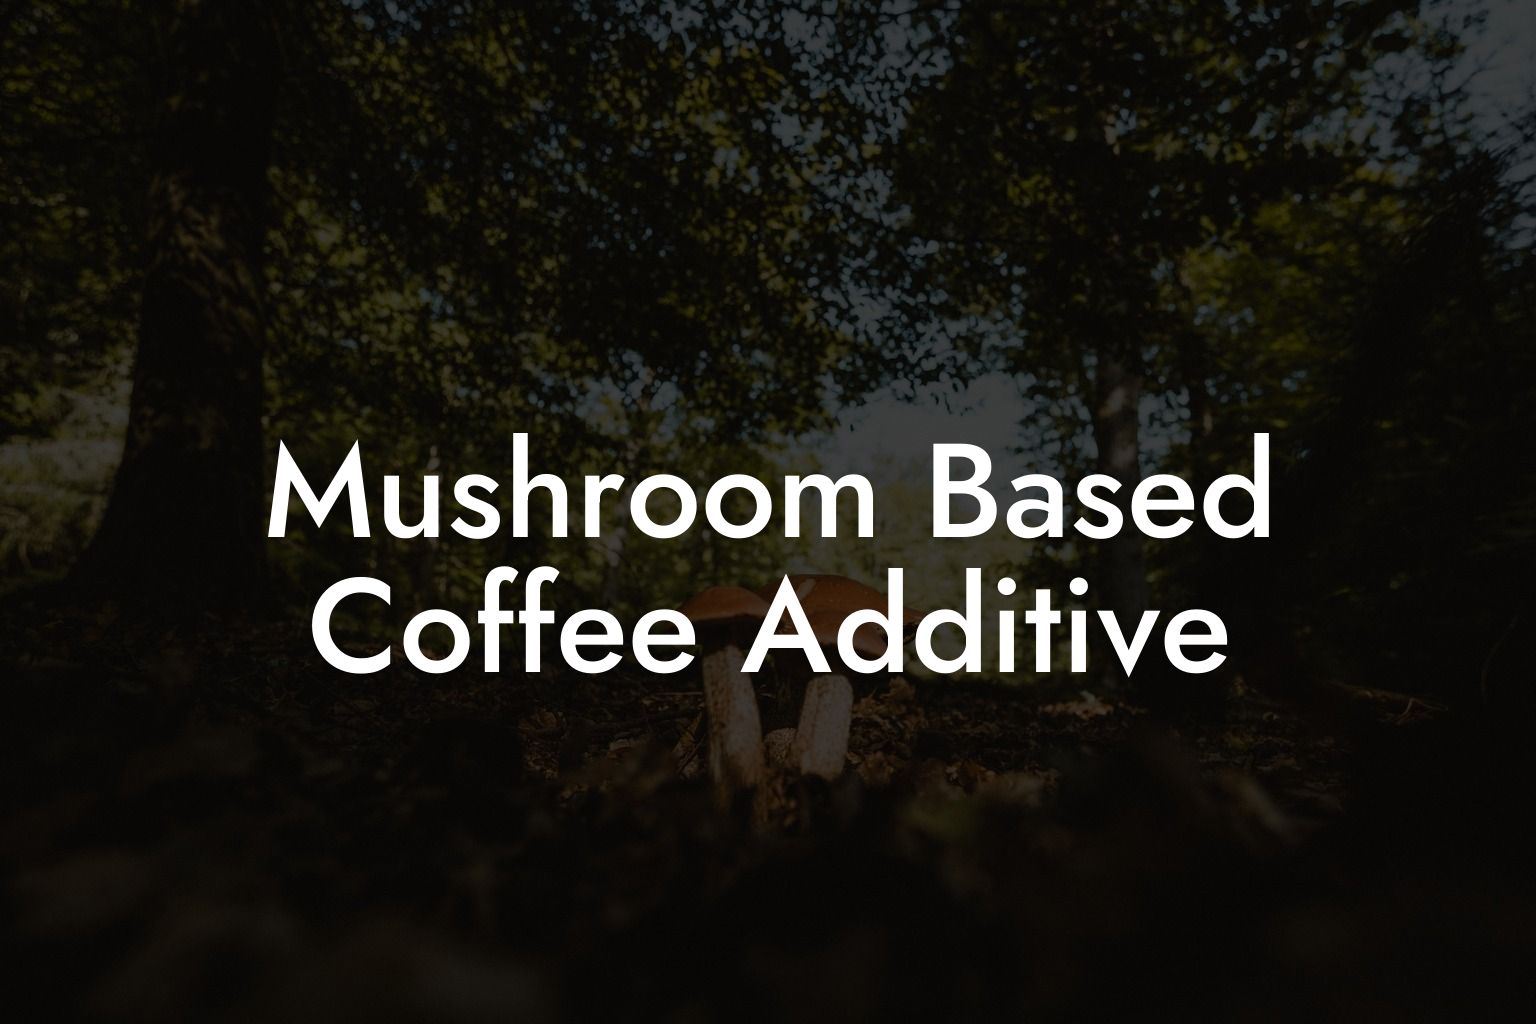 Mushroom Based Coffee Additive